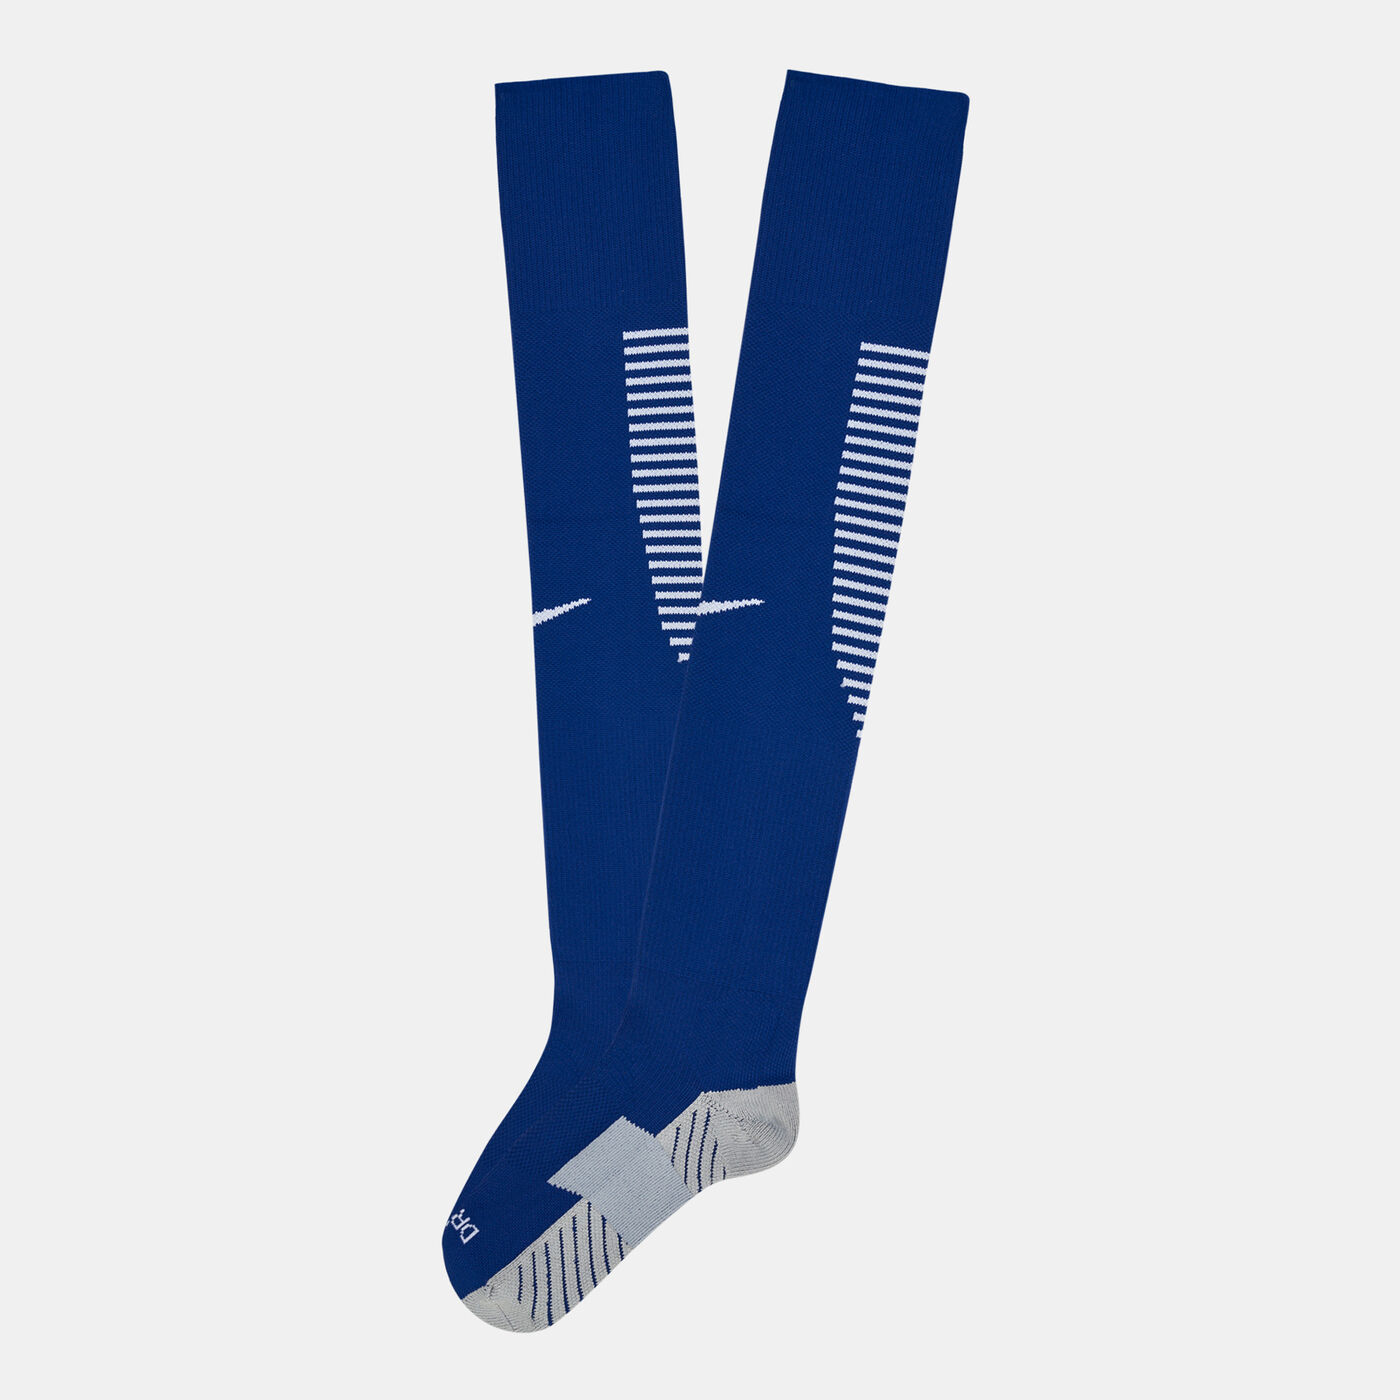 Men's Half Supporter Socks